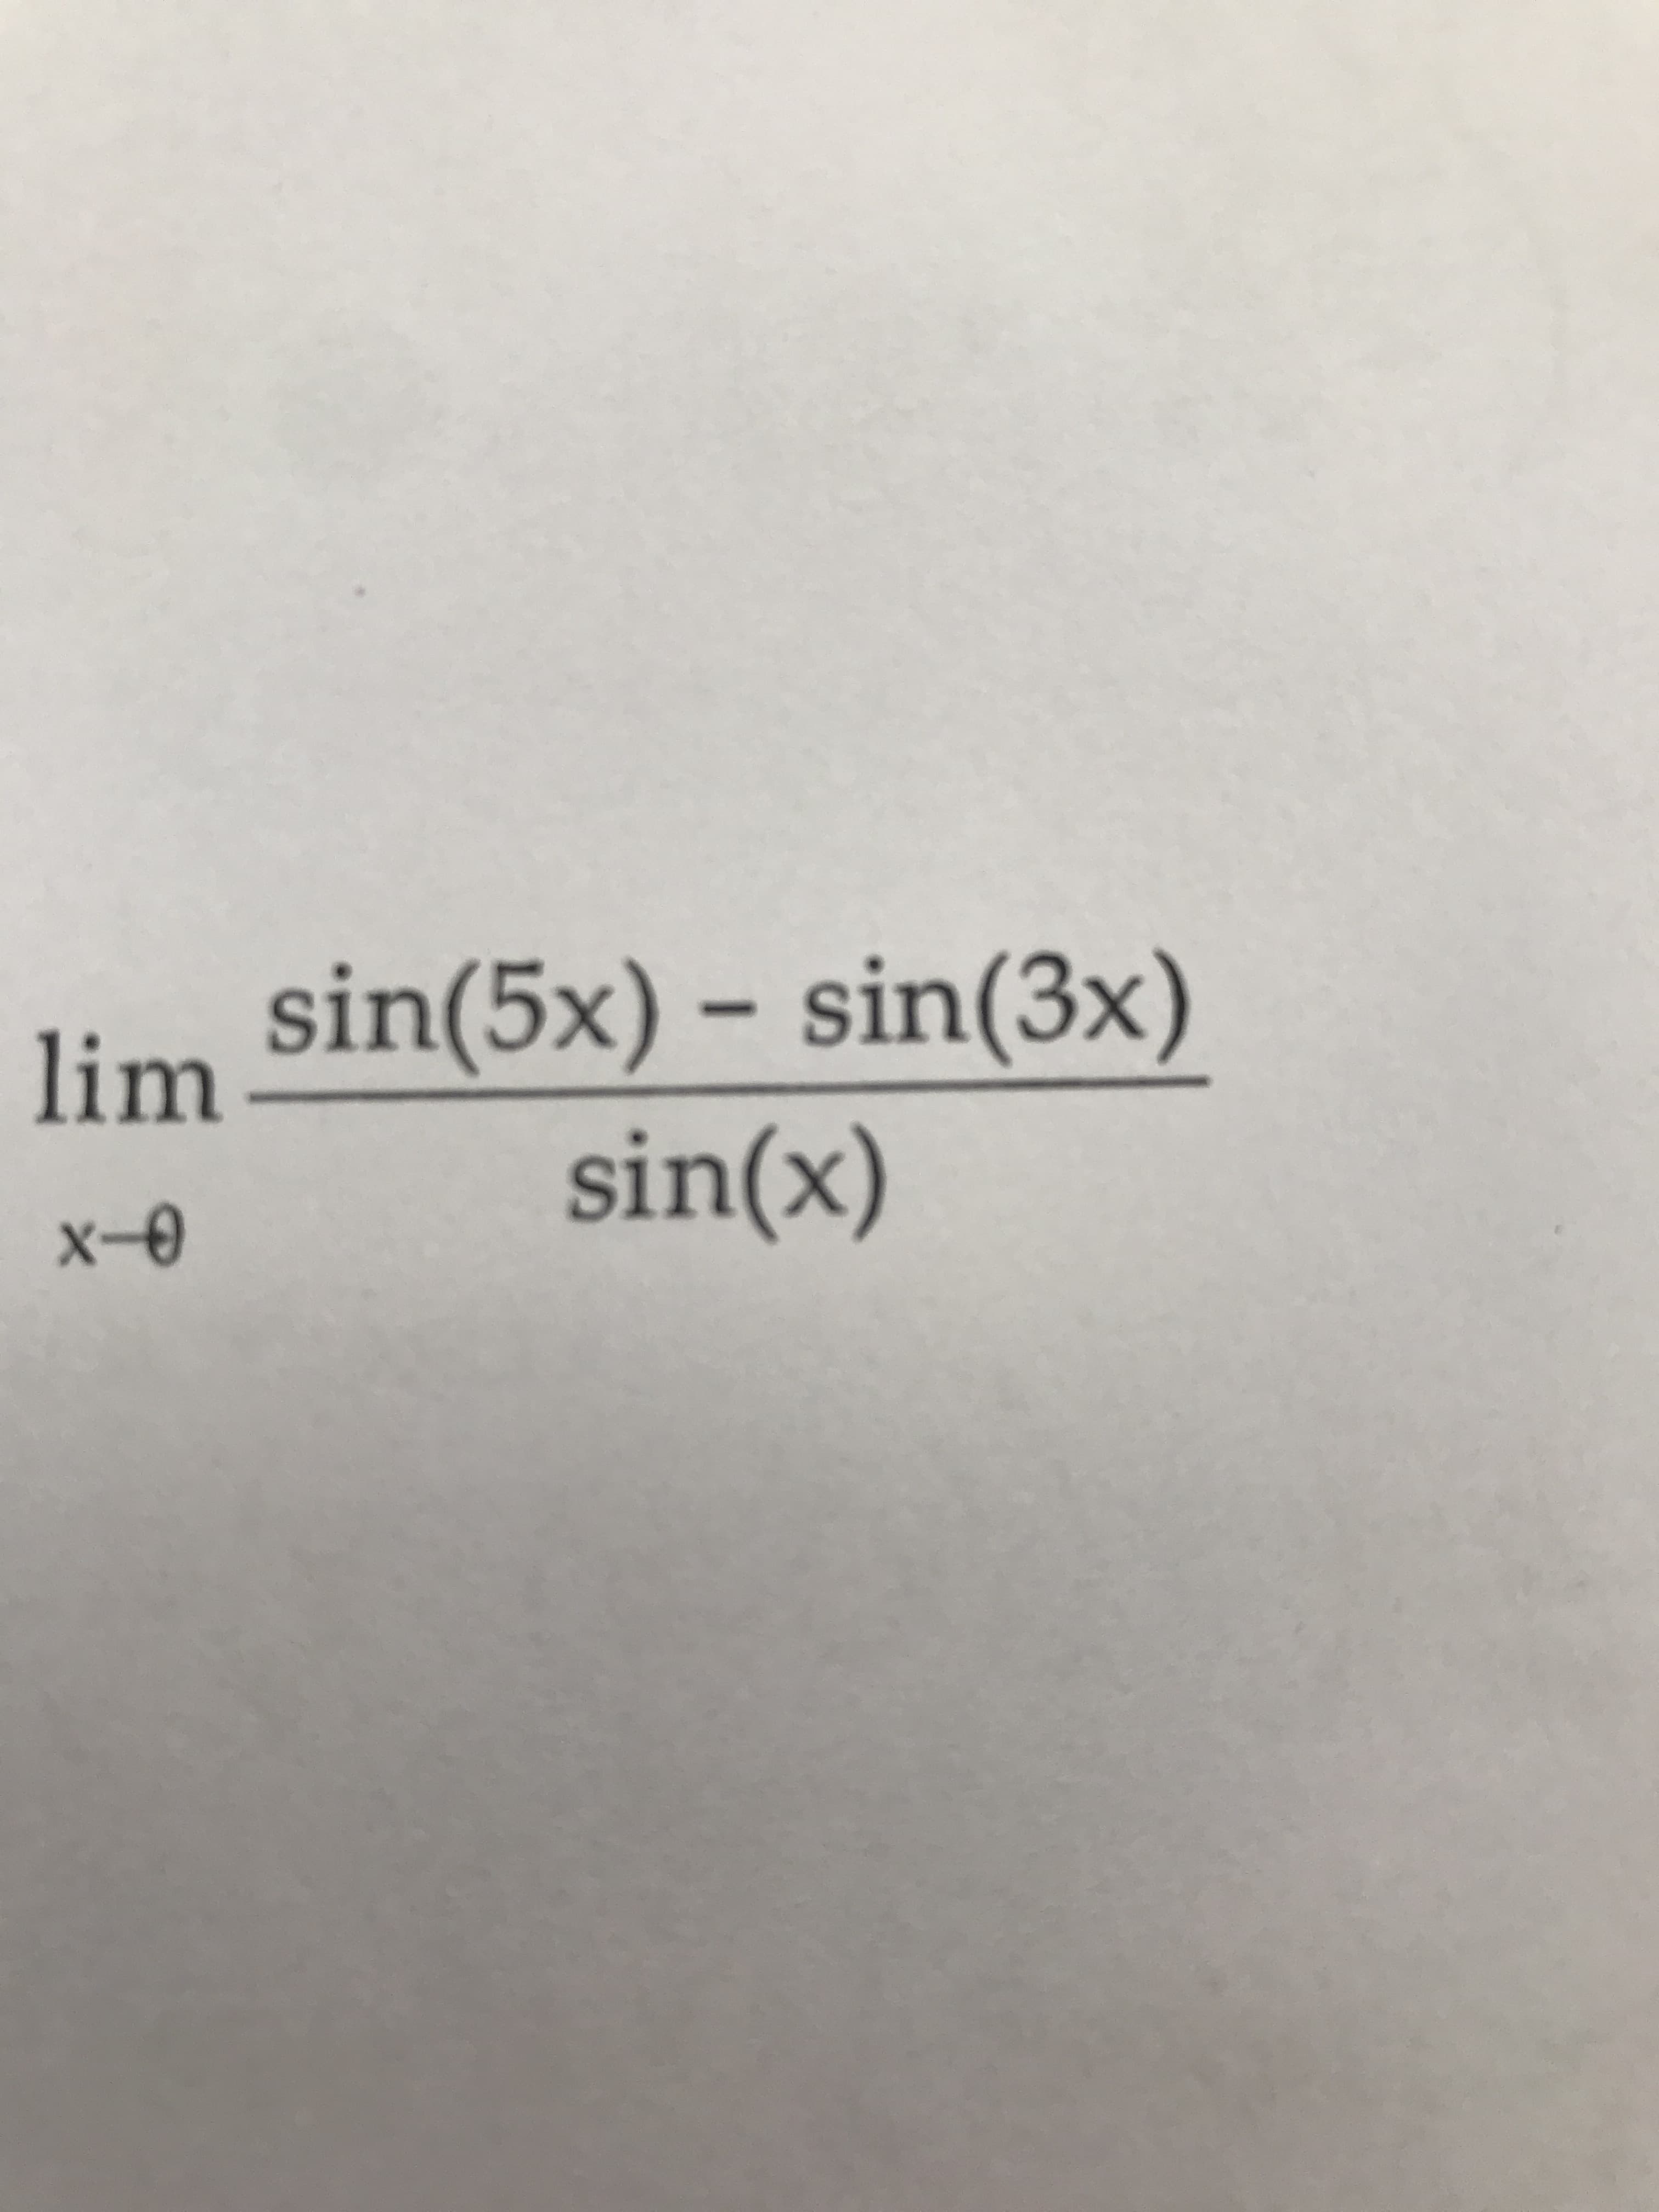 sin(5x) – sin(3x)
sin(x)
lim
x-0
